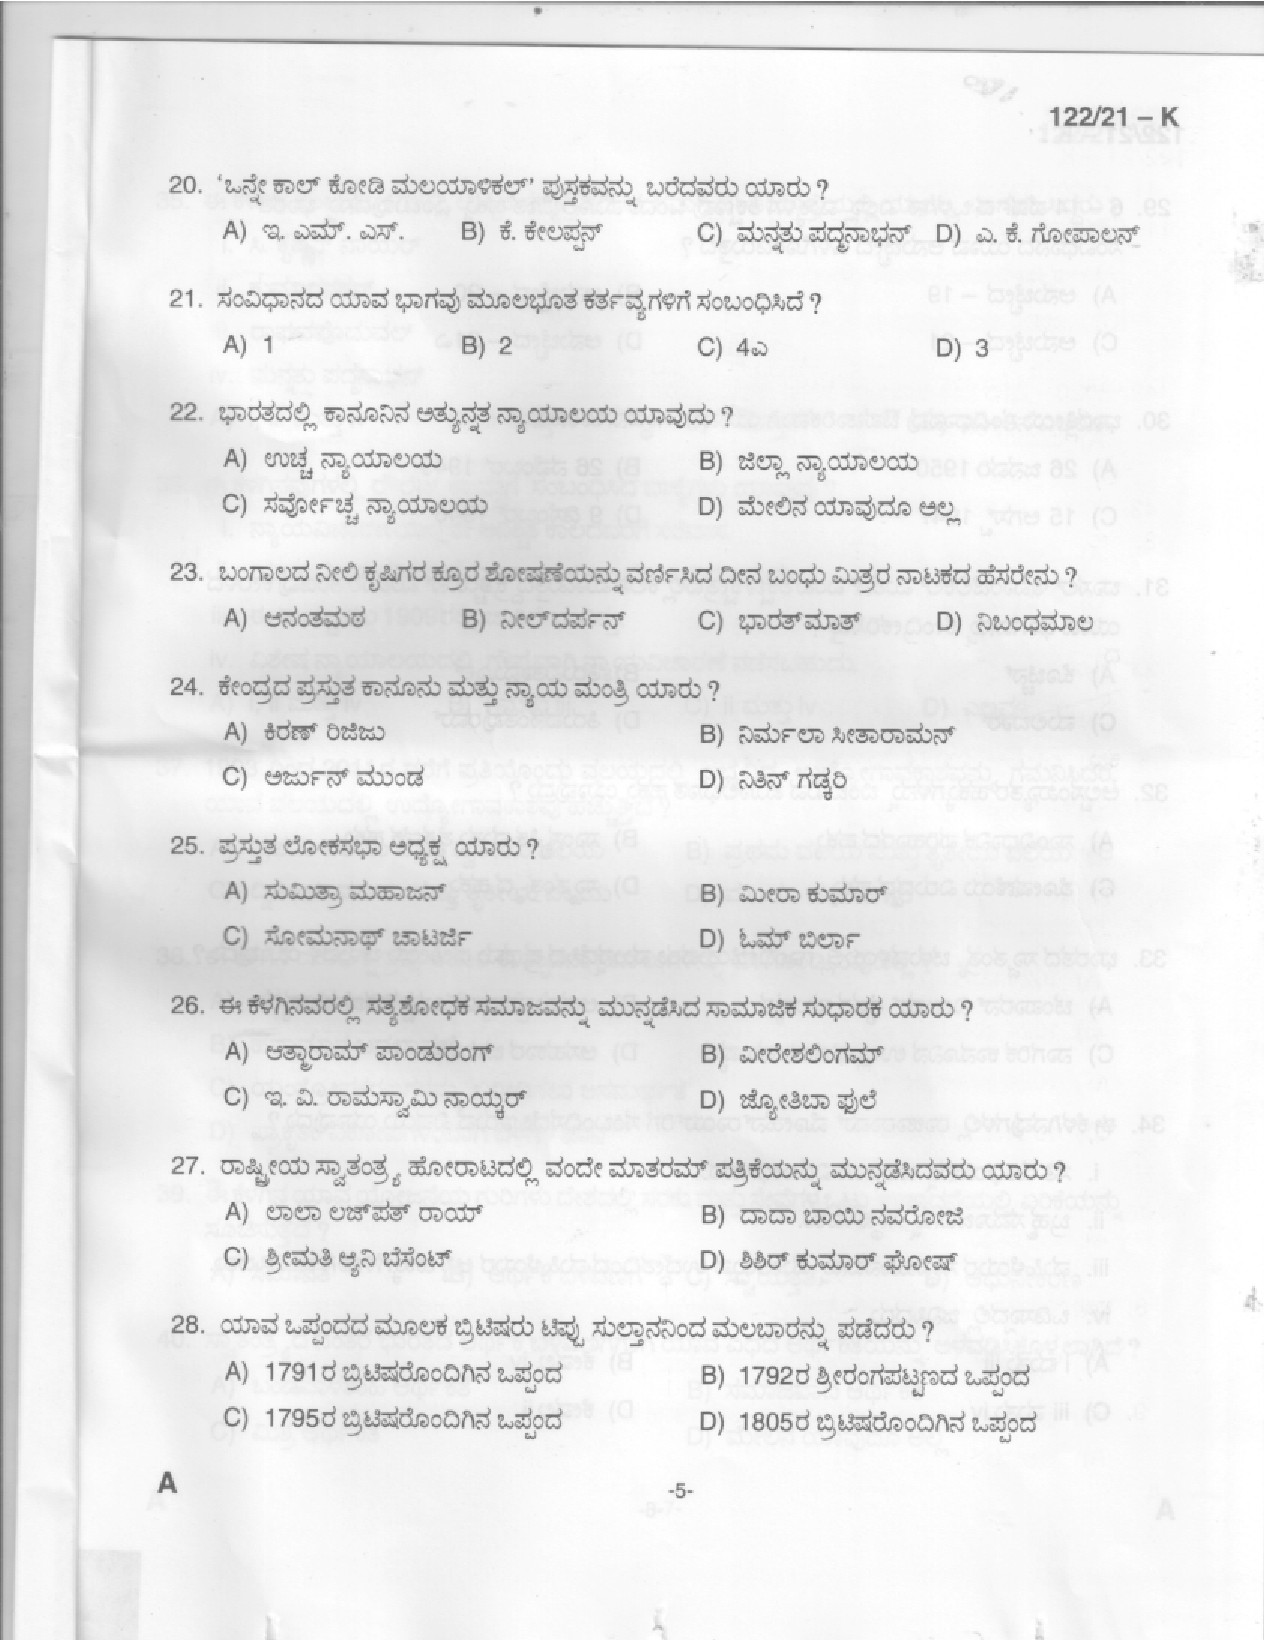 KPSC Upto SSLC Level Main Examination LGS Kannada 2021 Code 1222021 K 3